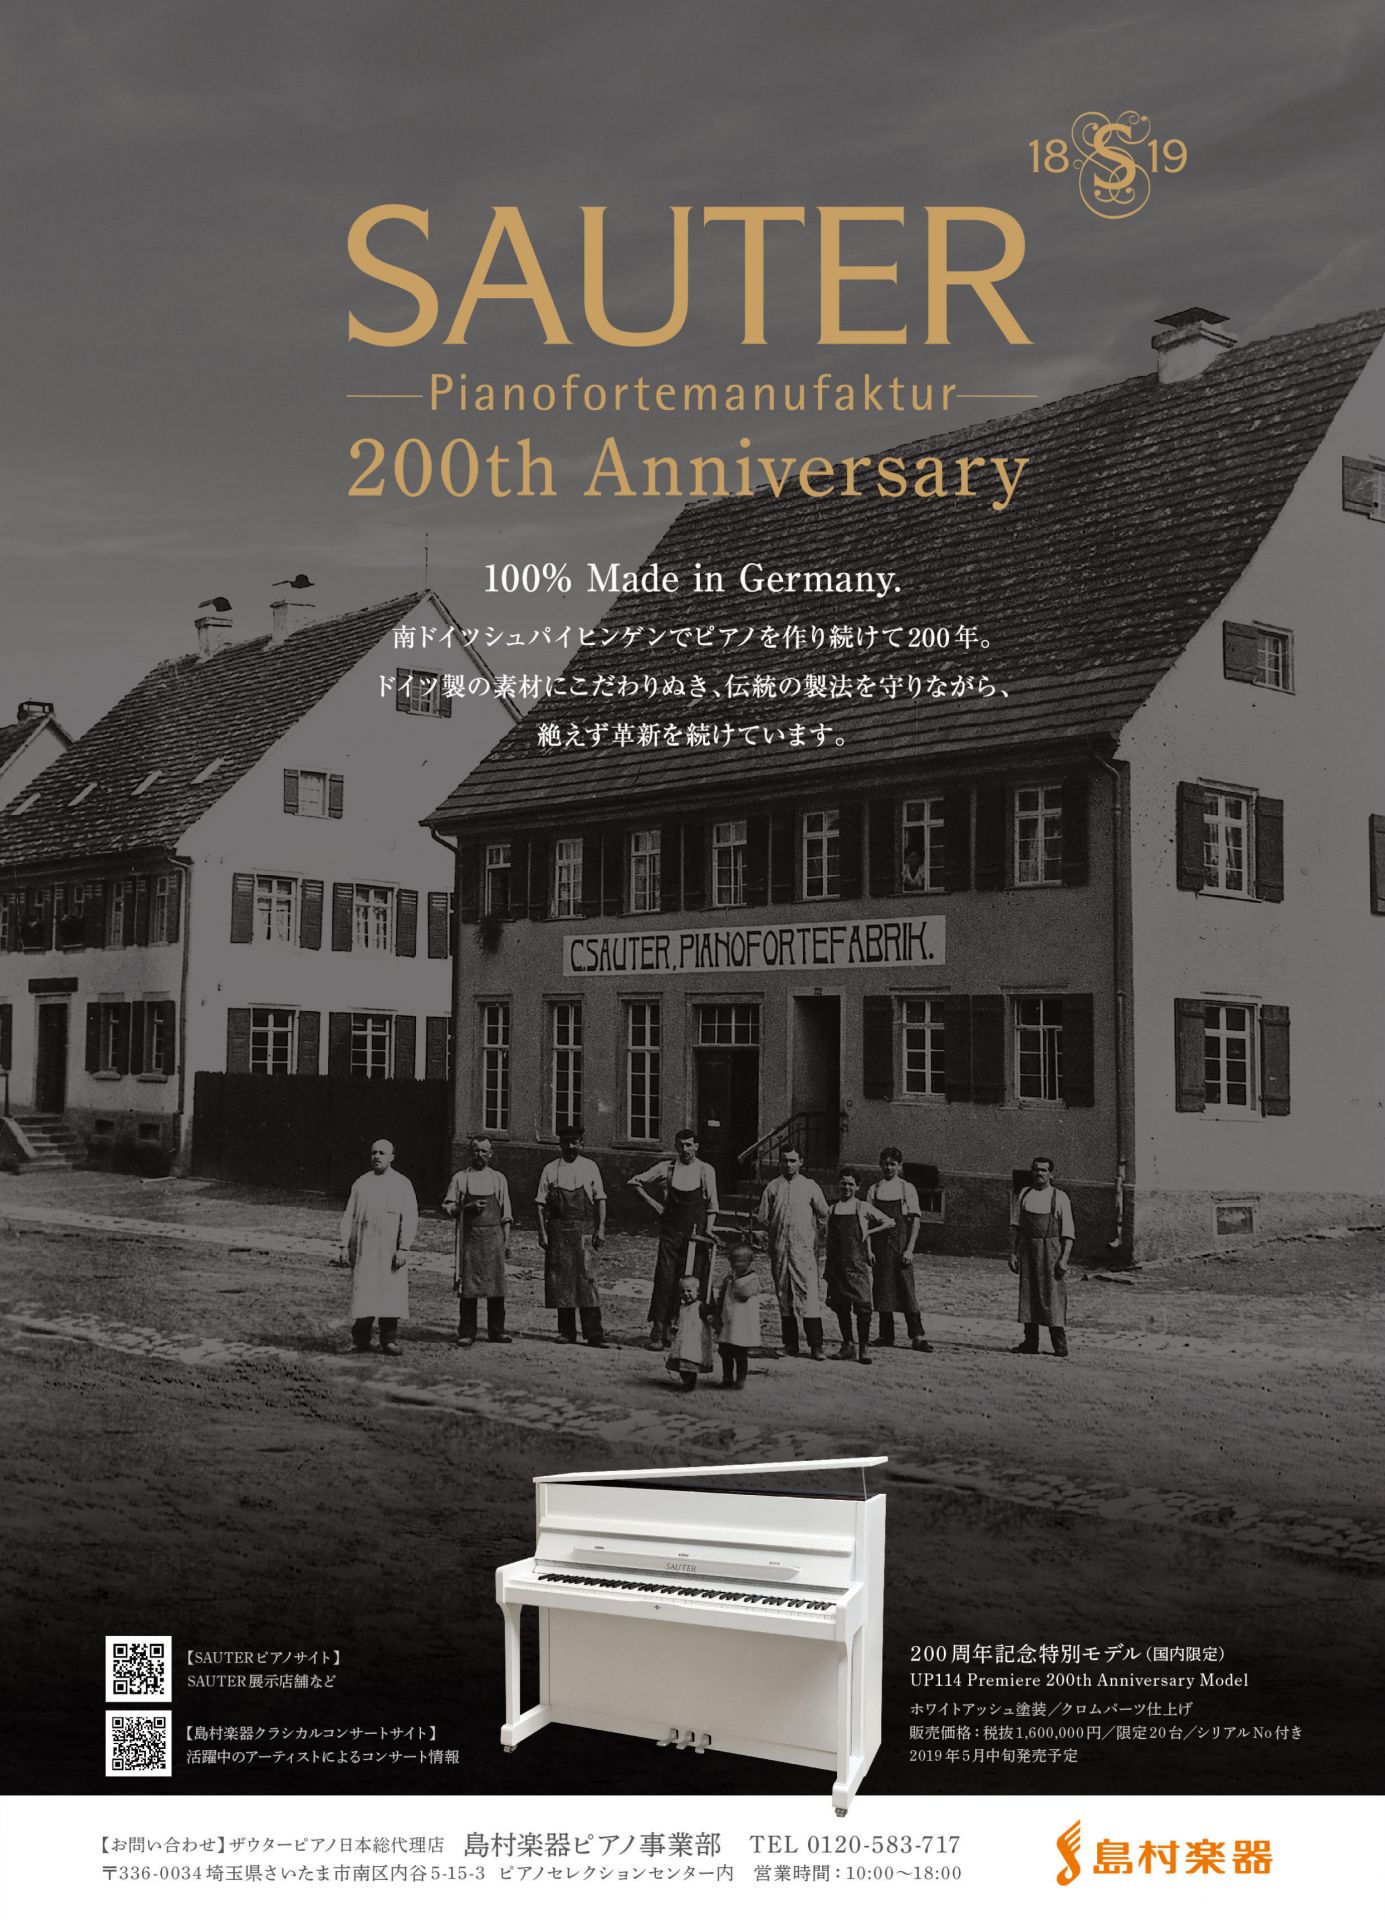 【ピアノ】SAUTER社創業200年記念限定モデル「UP114Premiere 200th Anniversary Model」発売決定！